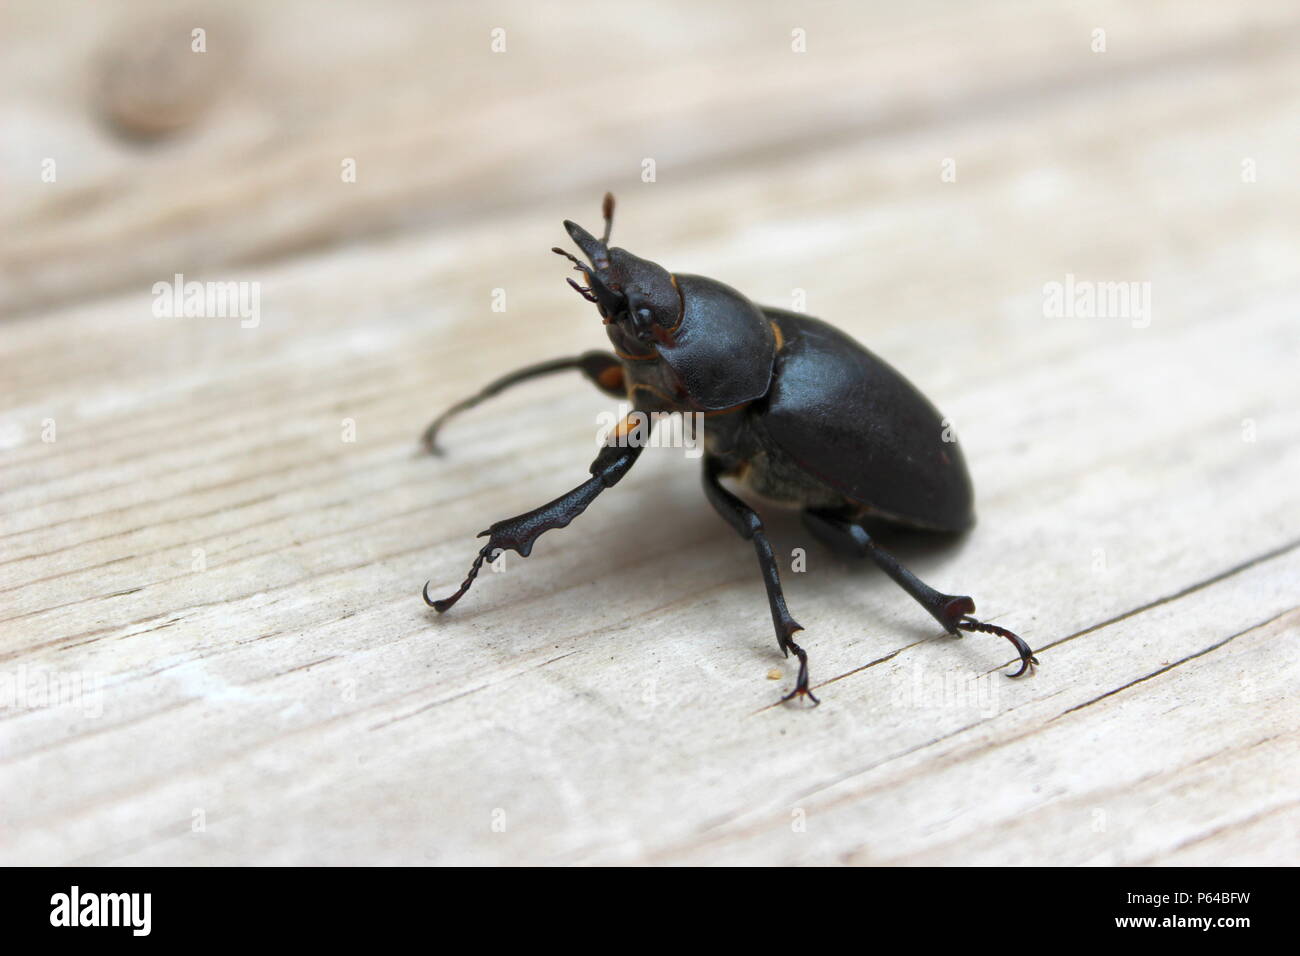 Vista lateral de un Escarabajo negro Foto de stock